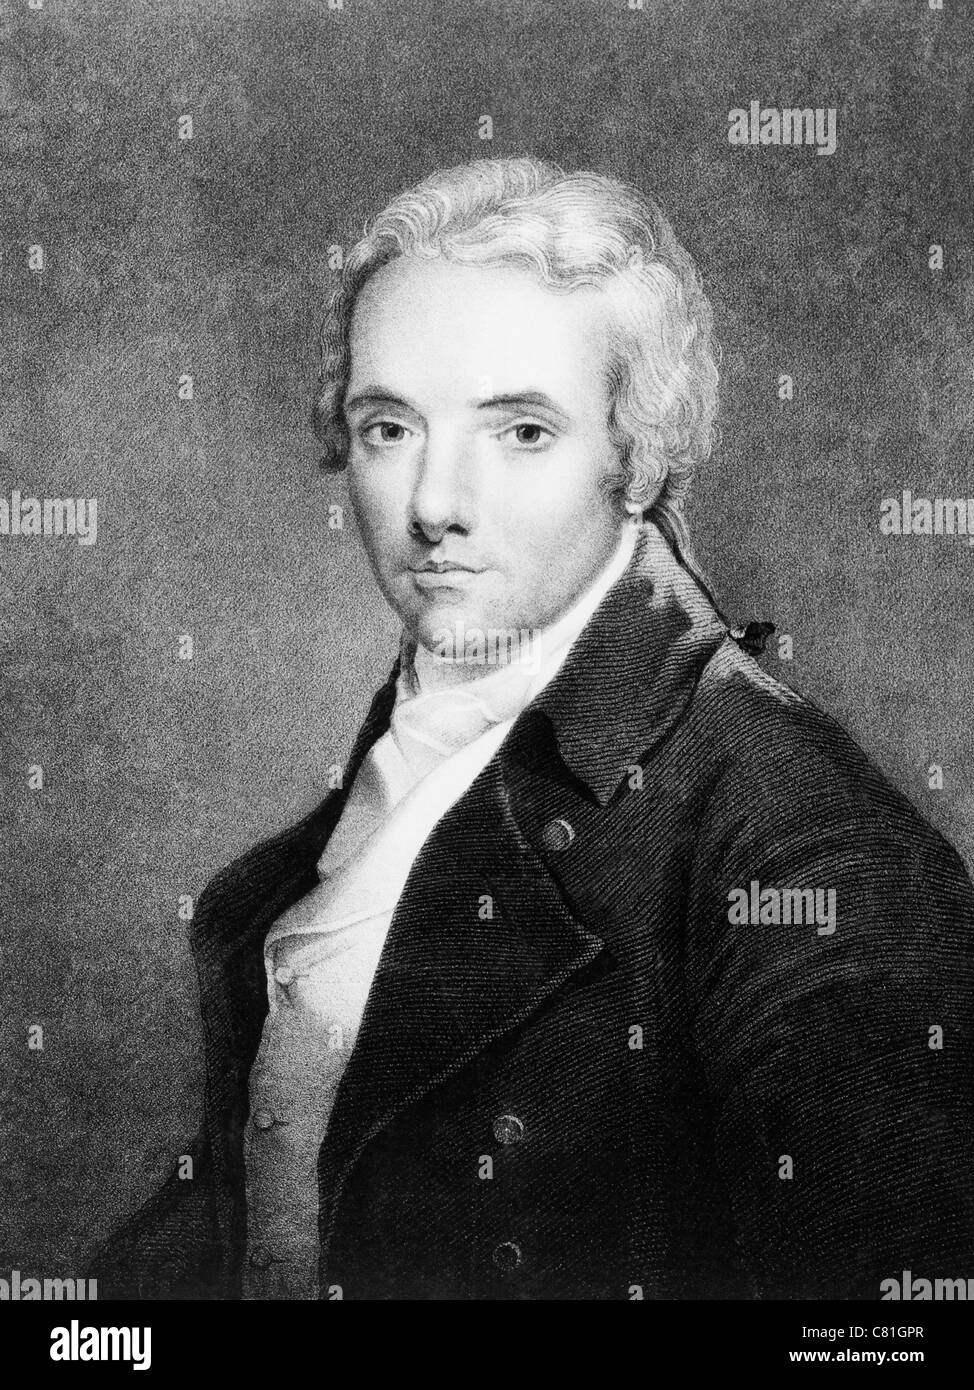 Ritratto d'epoca del politico britannico William Wilberforce, risalente al 1884 circa (1759 - 1833). Foto Stock